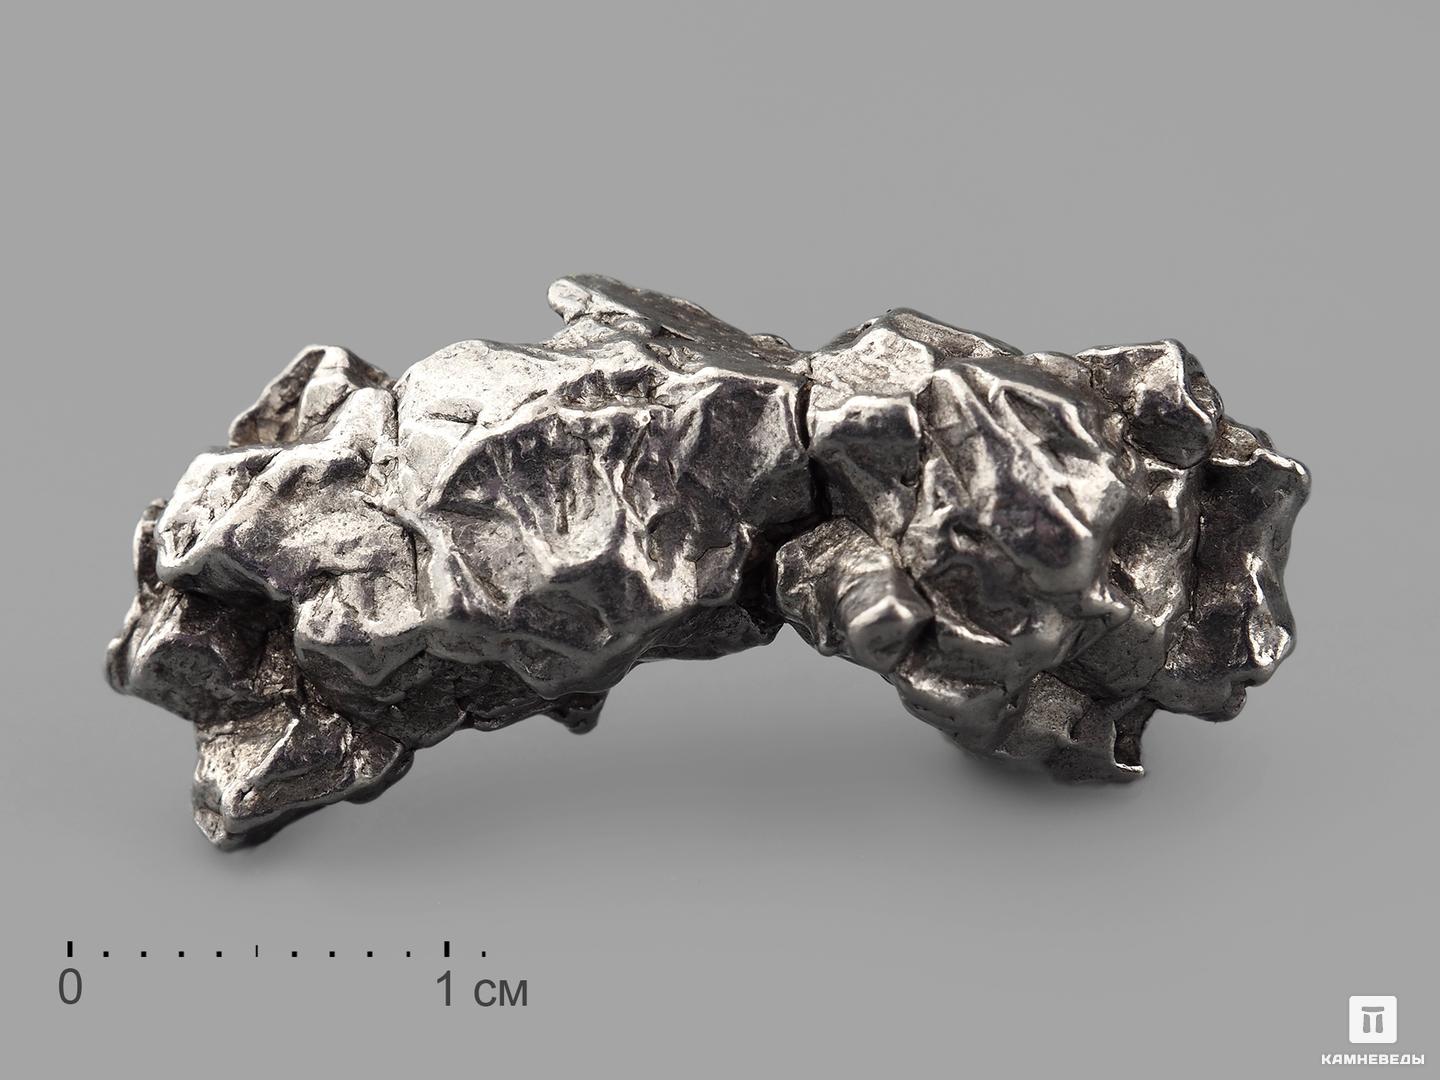 Метеорит Кампо-дель-Сьело, осколок 2,5-3 см (10-12 г) метеорит кампо дель сьело осколок 2 5 3 5 см 21 23 г